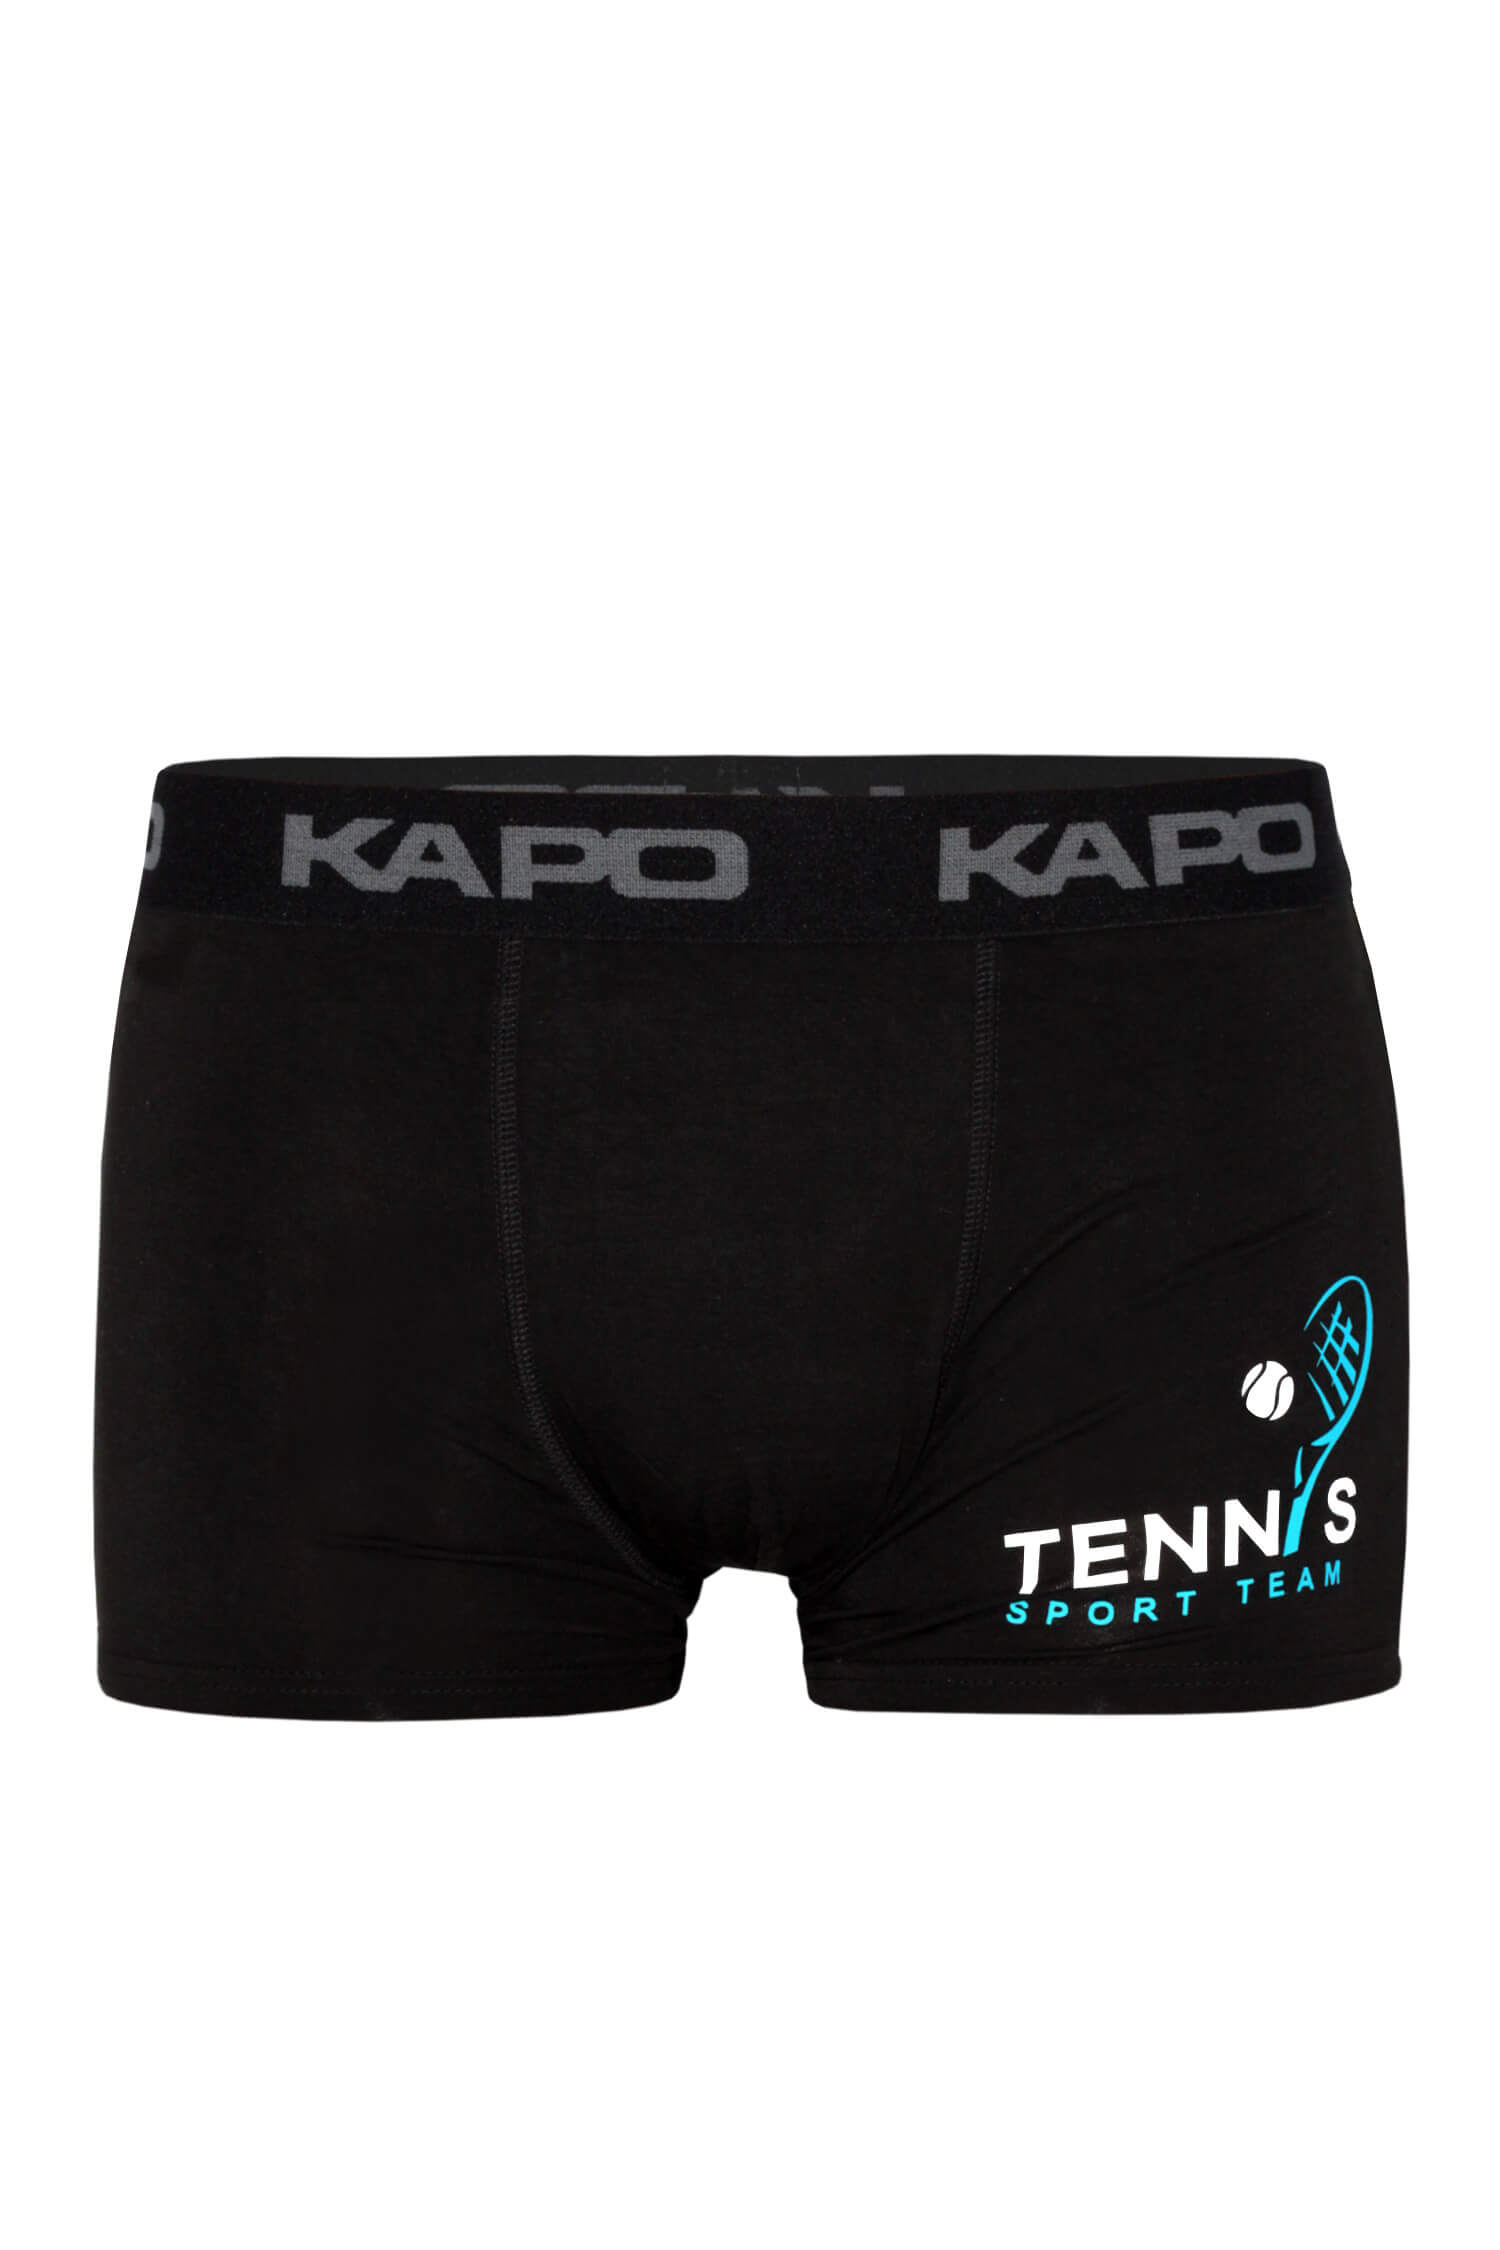 Rafael Kapo tenis boxerky 3XL černá